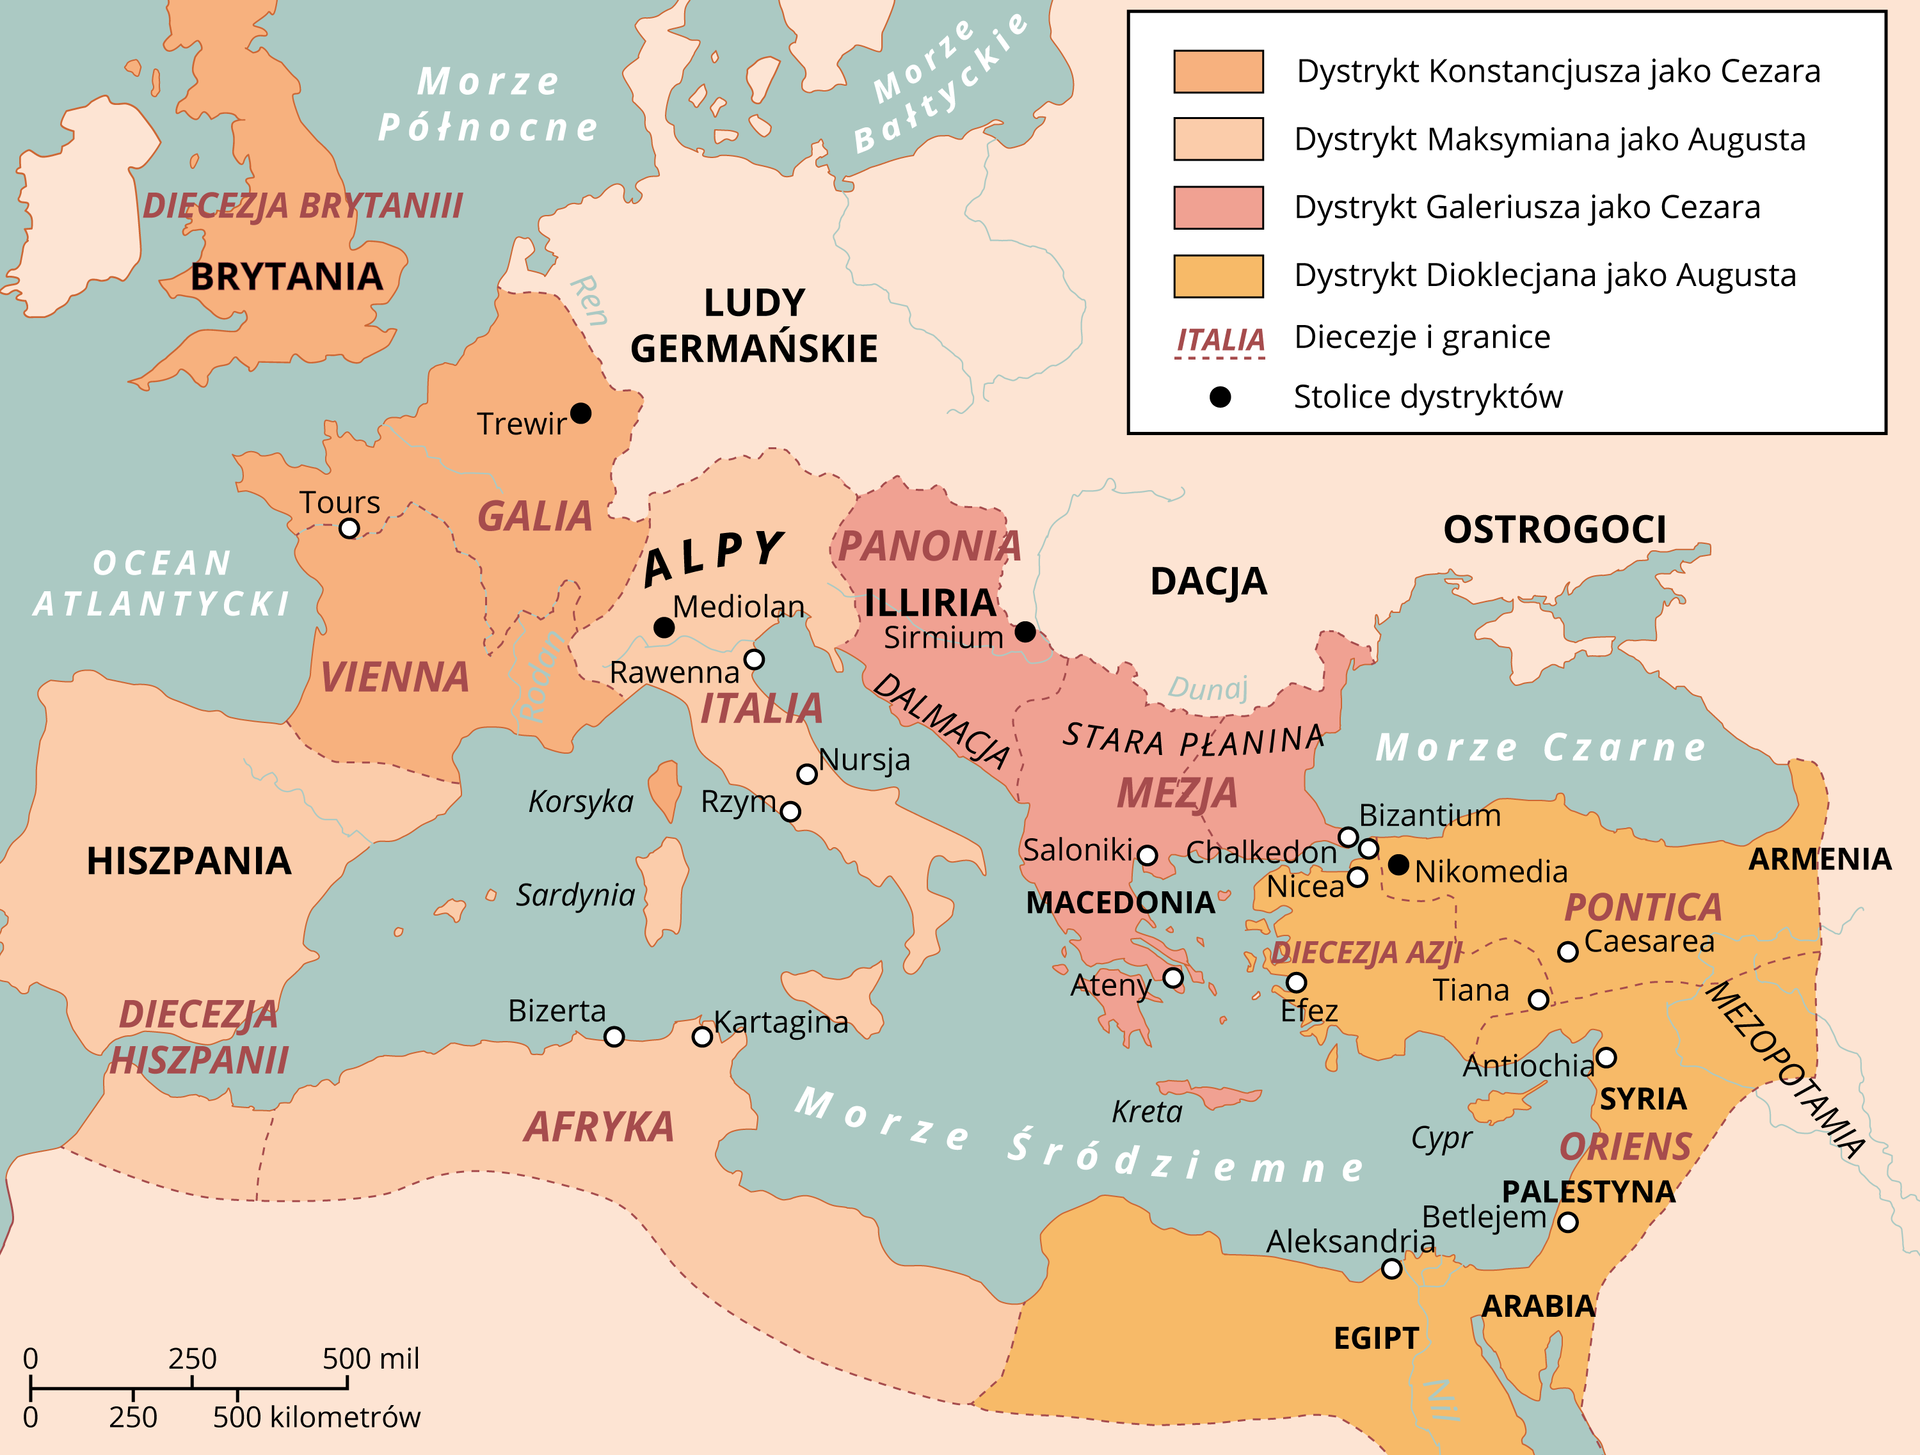 Mapa Europy przedstawia system tetrarchii w Cesarstwie Rzymskim. Dystrykt Konstancjusza jako Cezara to: obecna Francja, Brytania, Korsyka. Stolica to Trewir. Dystrykt Maksymiliana jako Augusta to: Hiszpania, północna Afryka, Włochy, oraz wyspa Sardynia. Stolica to Mediolan. Dystrykt Galeriusza jako Cezara to: cała Grecja oraz tereny na zachód od niej. Stolkica to Sirmium. Dystrykt Dioklecjana jako Augusta to: Egipt, Bliski Wschód oraz dzisiejsza Turcja. Stolica to Nikomedia. Na mapie zaznaczone są również diecezje: Hiszpania, Vienna, Galia, Diecezja Brytanii, Italia, Panonia, Dalmacja, Mezja, Pontica, Diecezja Azji oraz Oriens. 